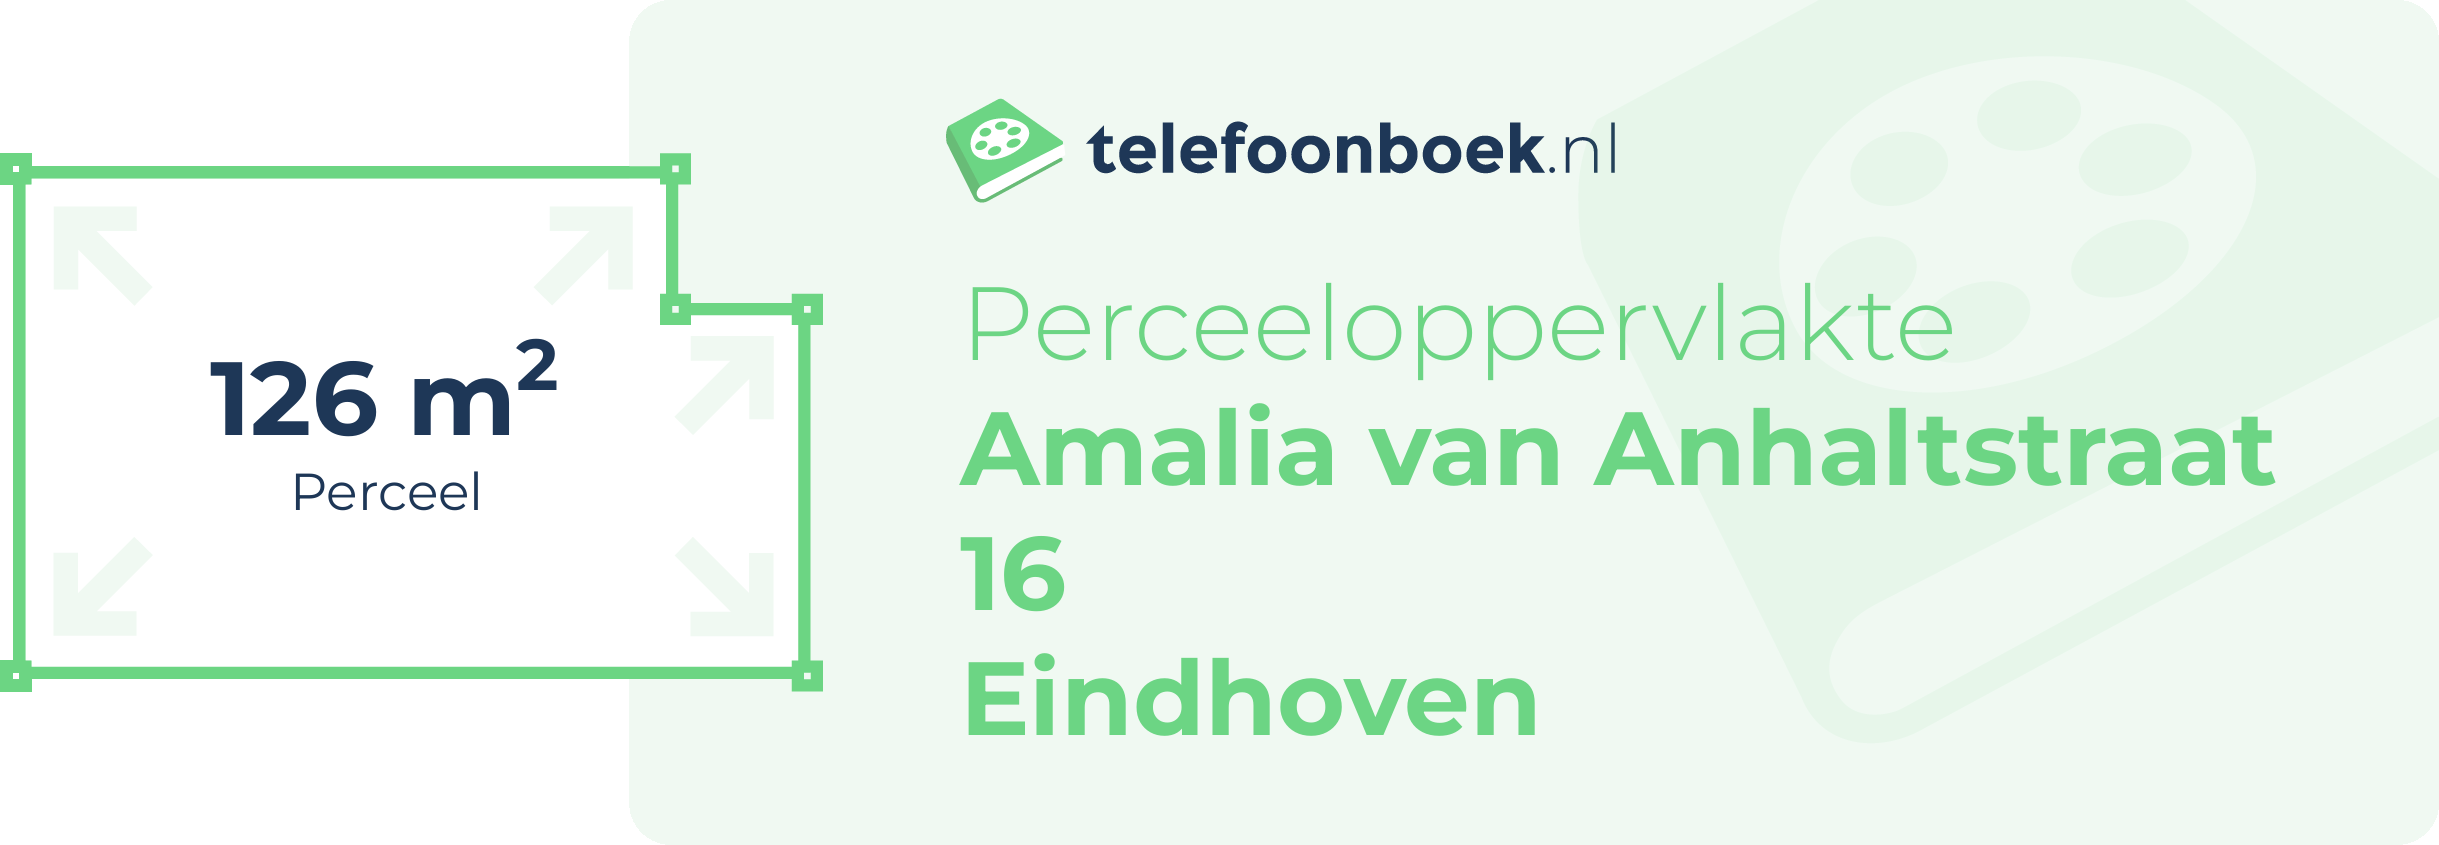 Perceeloppervlakte Amalia Van Anhaltstraat 16 Eindhoven